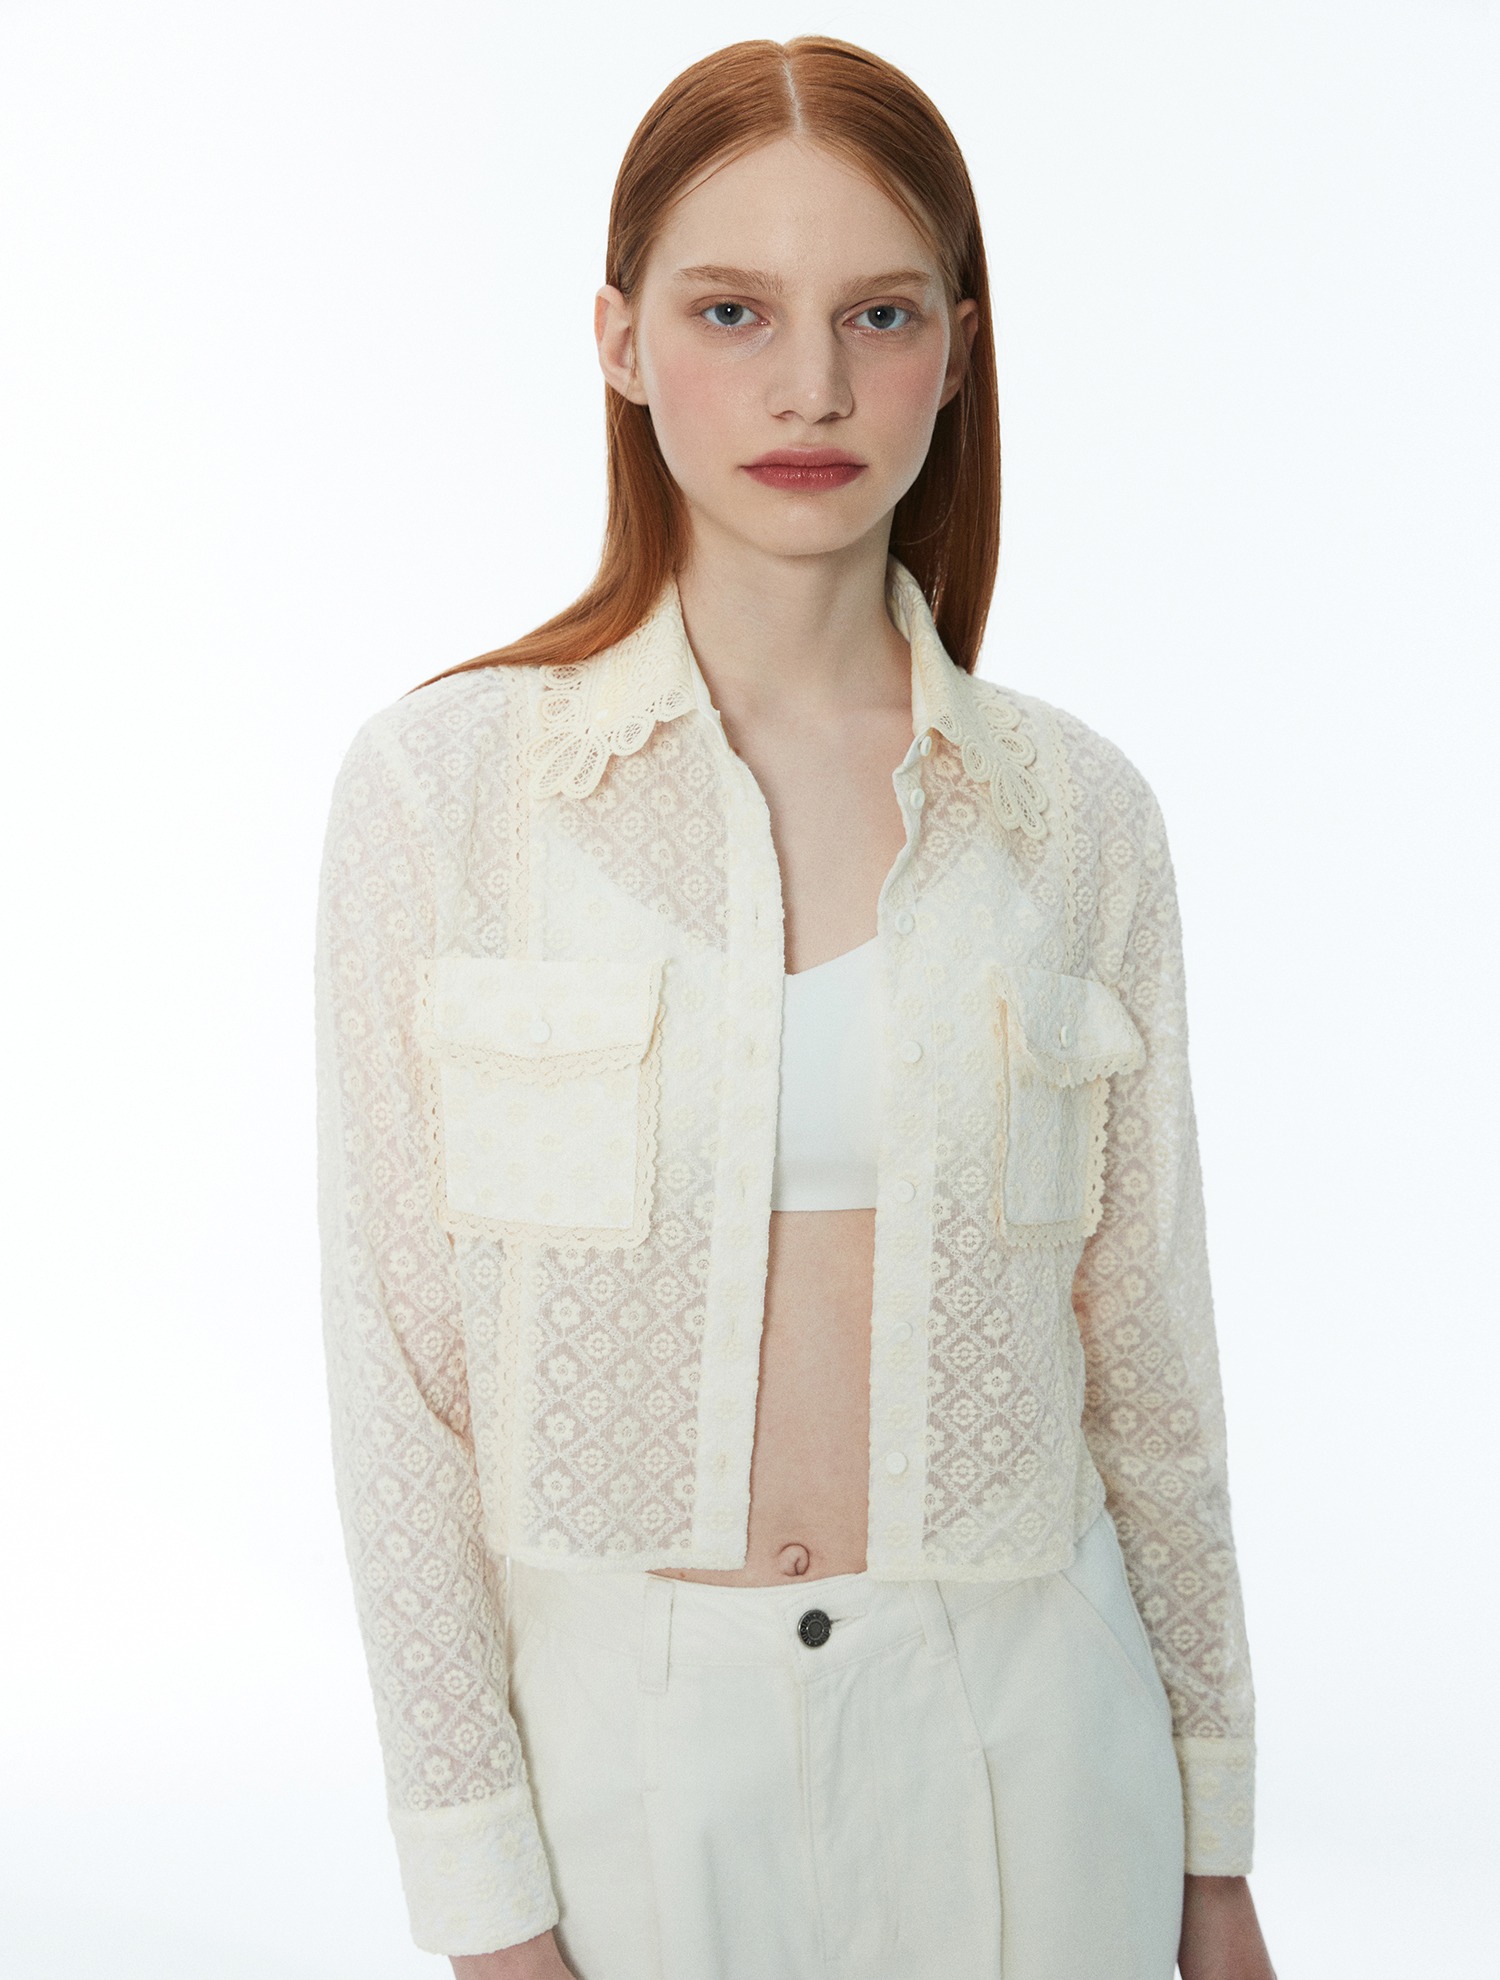 [6/23 예약배송]Lace blouse 001 Ivory